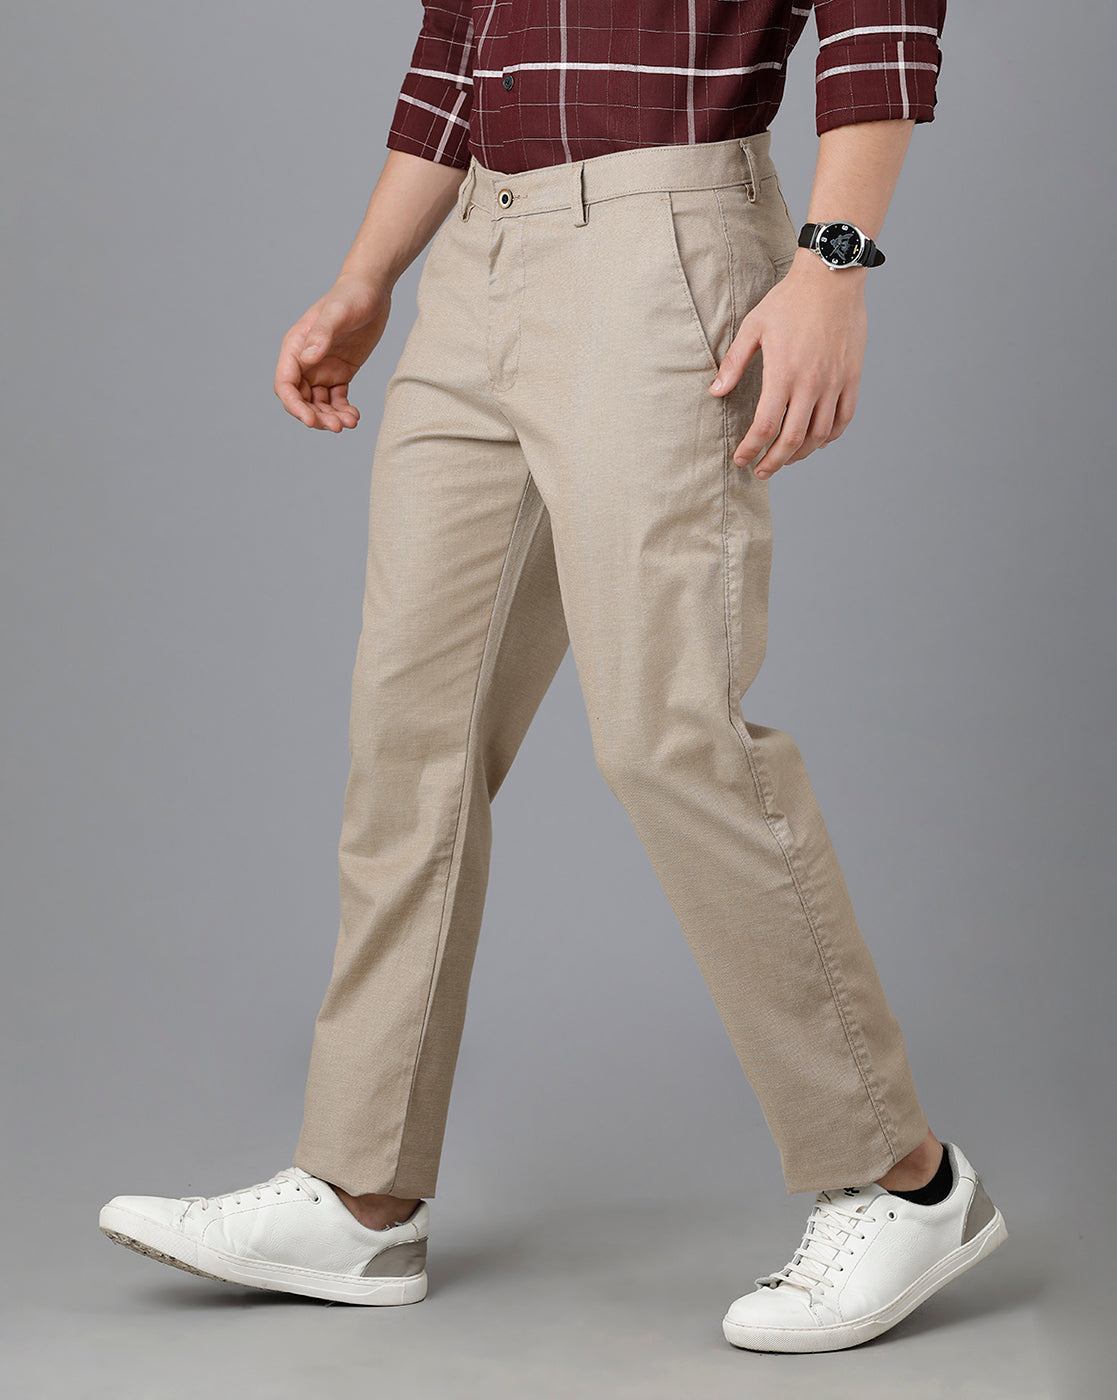 Classic Polo Mens Cotton Solid Slim Fit Khaki Color Trouser